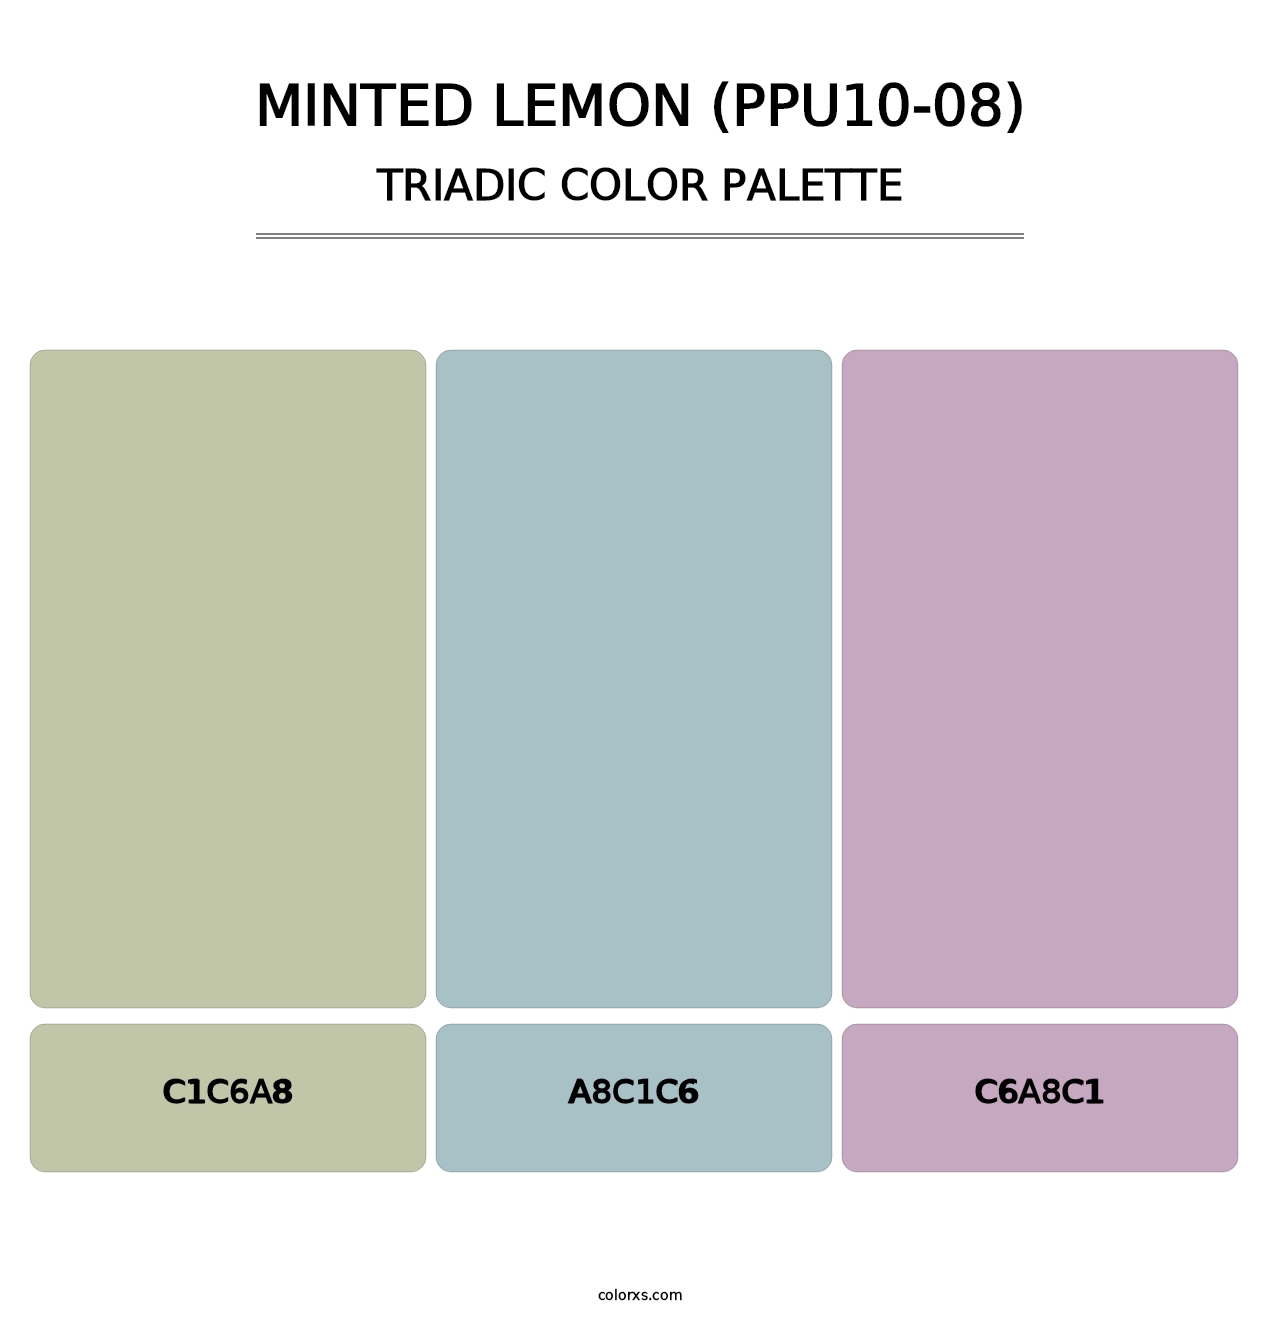 Minted Lemon (PPU10-08) - Triadic Color Palette